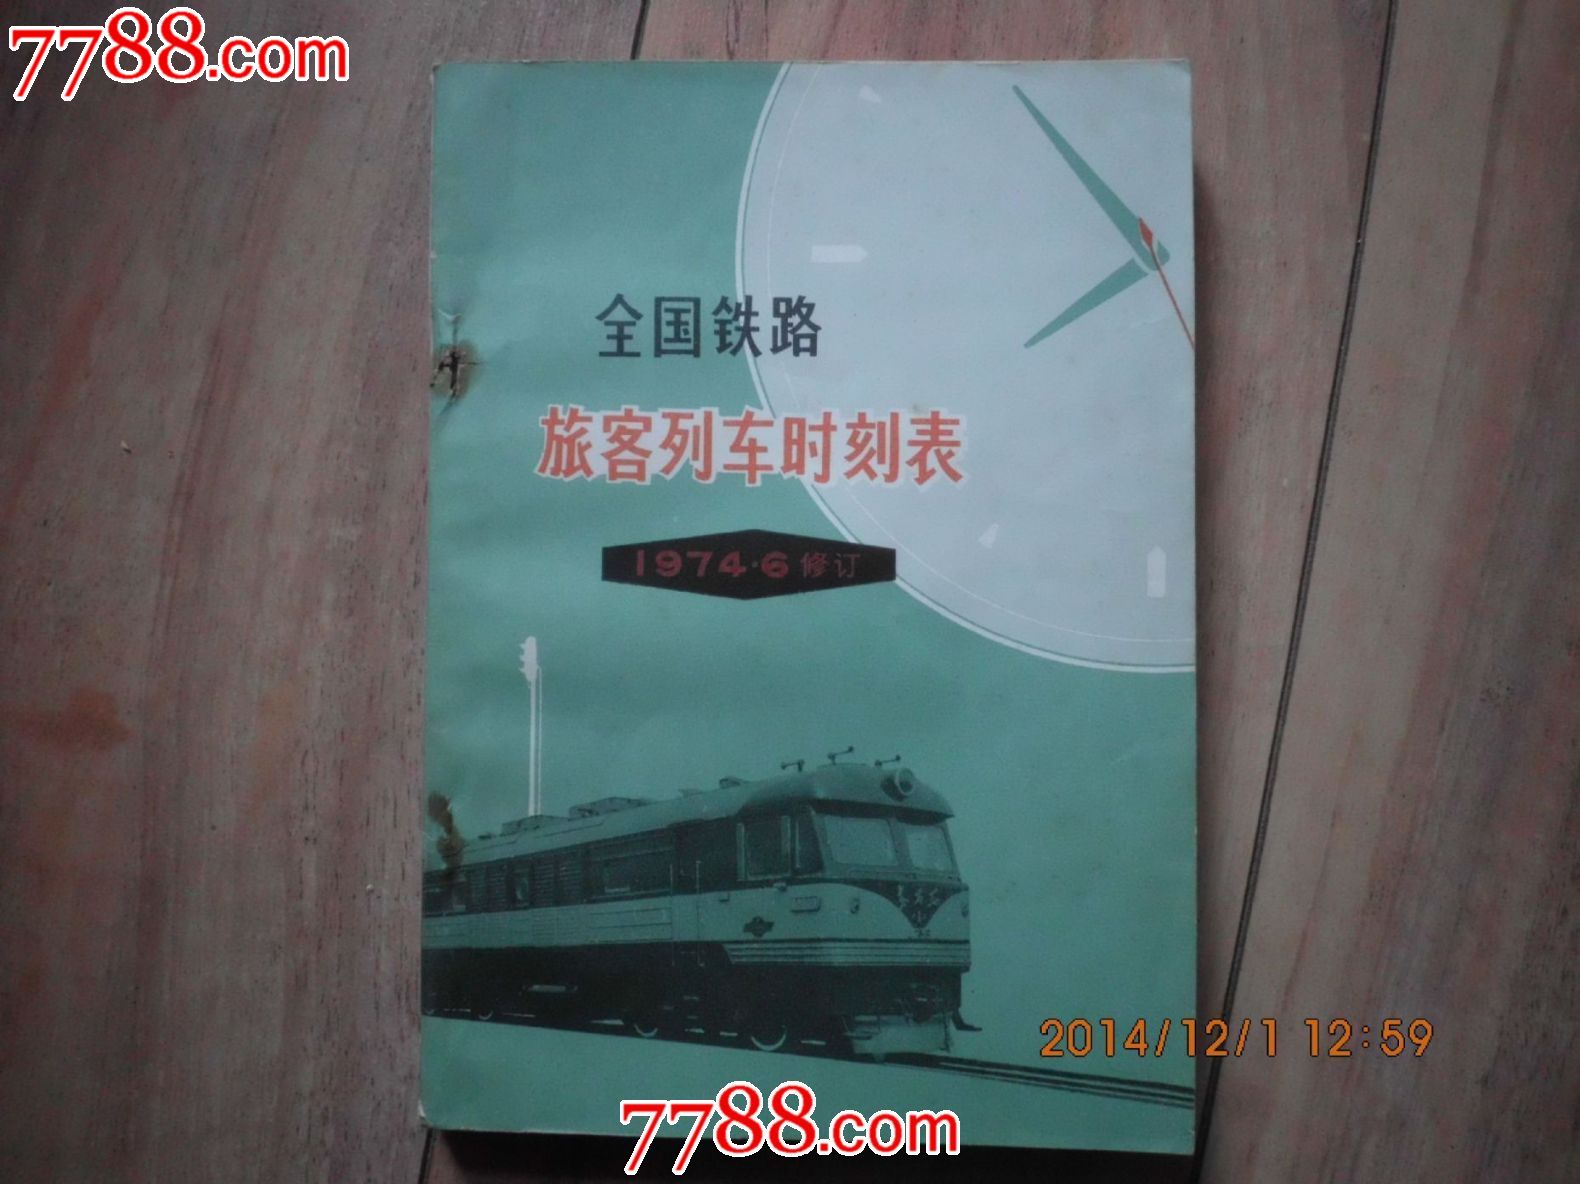 1974年列车时刻表,手册\/工具书,时刻表,文革期